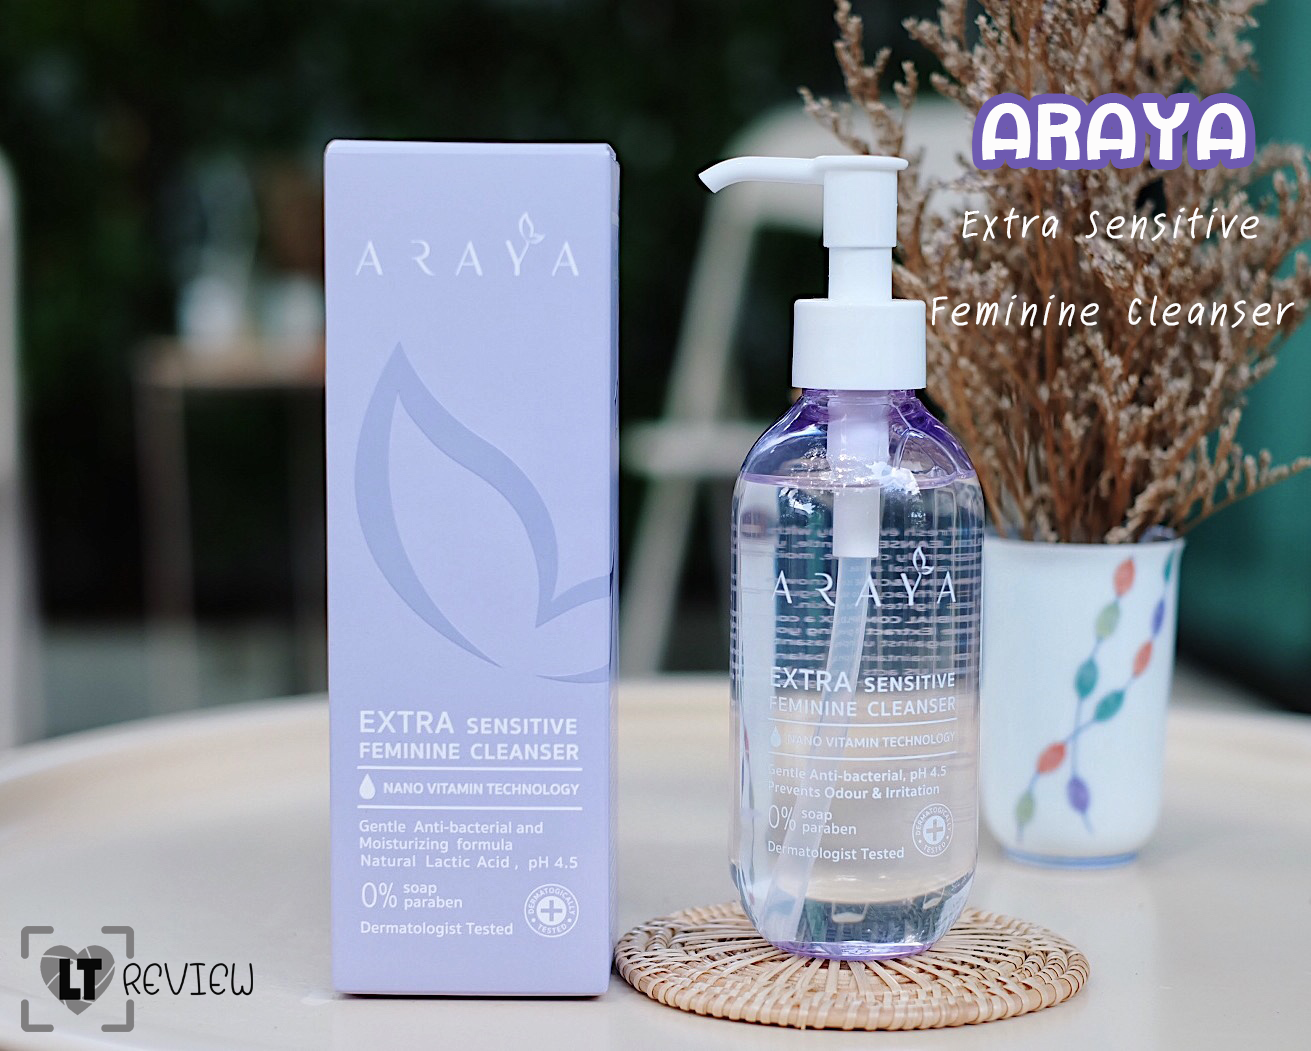 รีวิว ตัวช่วยดูแลจุดซ่อนเร้นฉบับสาวผิวแพ้ง่าย (Araya Extra Sensitive  Feminine Cleanser) | Hình 1